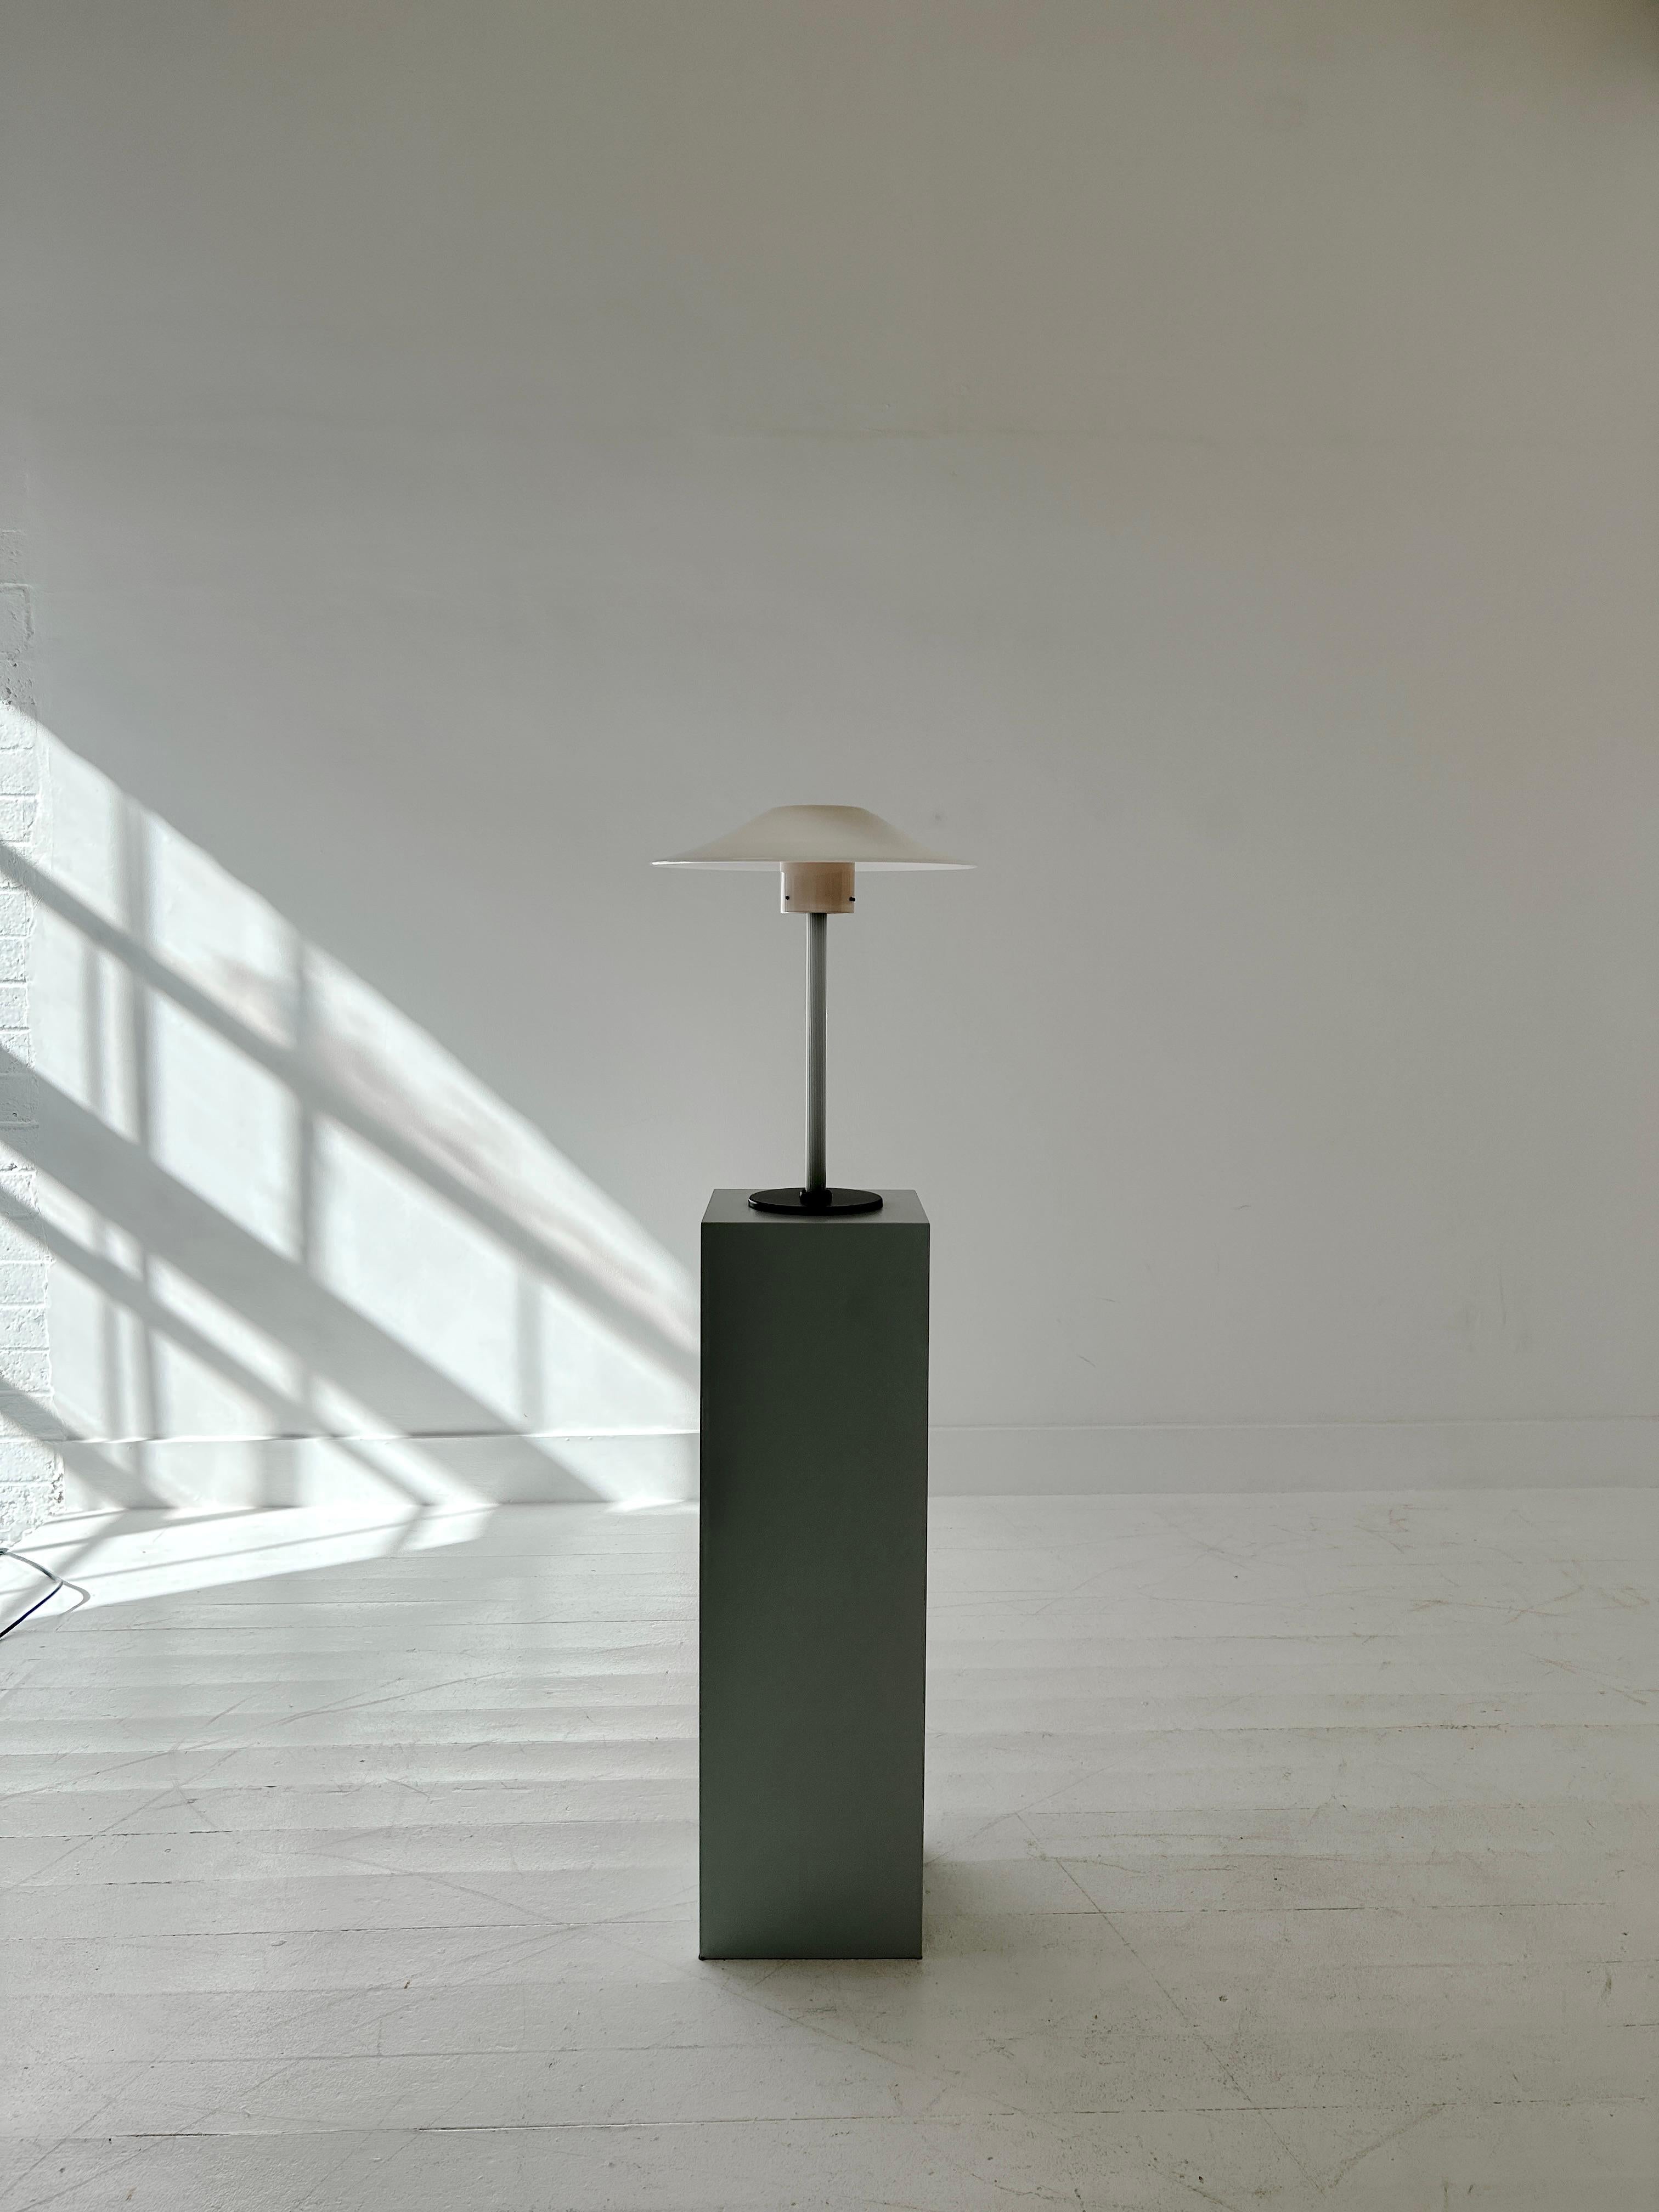 Une élégante lampe de table composée de verre de Murano stratifié et soufflé et d'une base circulaire en métal moulé. Signé.

Un seul morceau de verre forme l'abat-jour, relié à la tige en verre cannelé par trois vis. La lumière émet à travers le